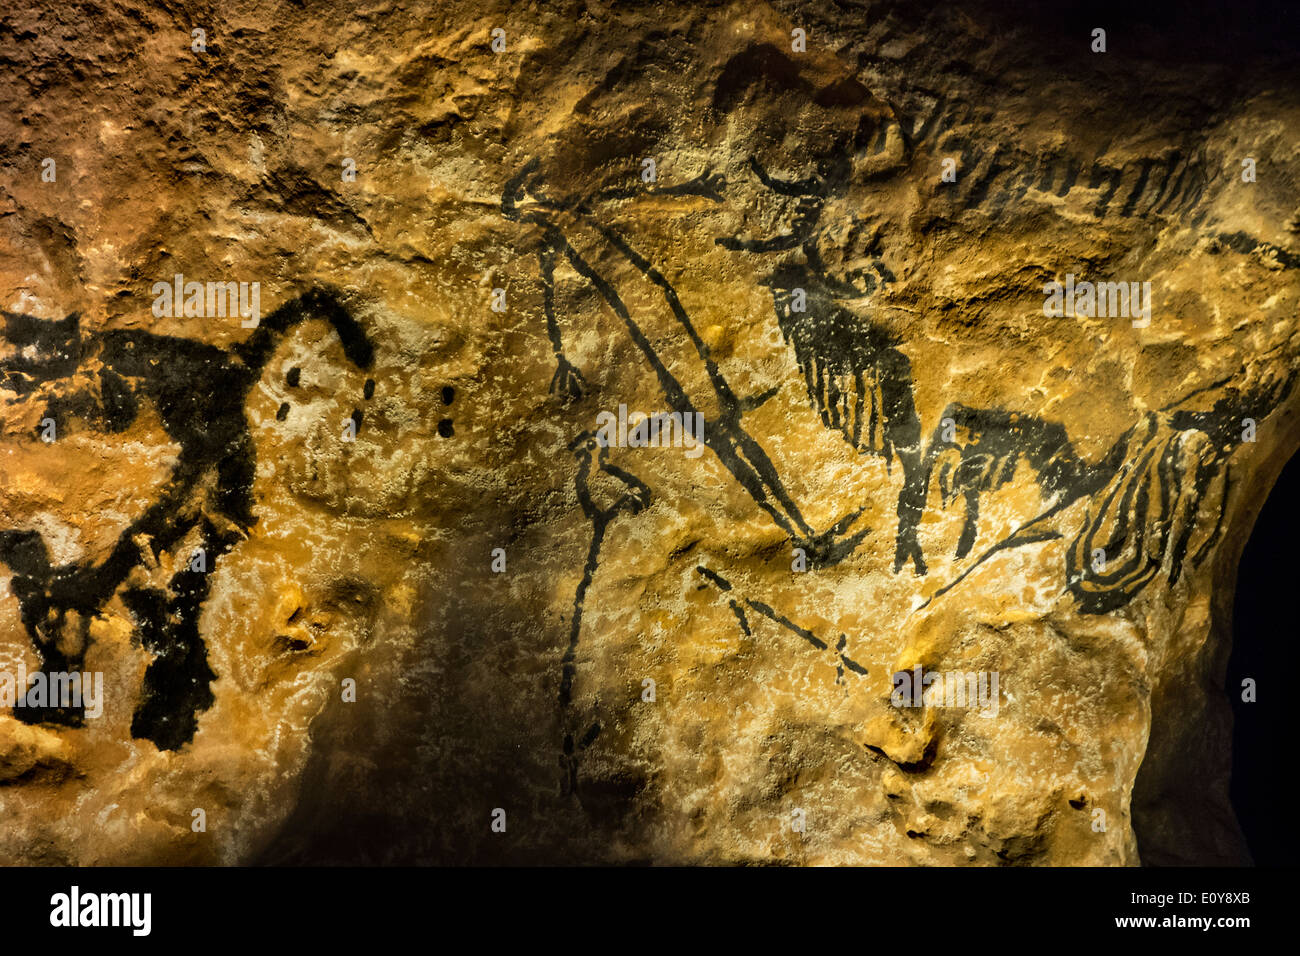 Réplique de la partie de la grotte de Lascaux montrant l'homme préhistorique et le bison, Dordogne, France Banque D'Images